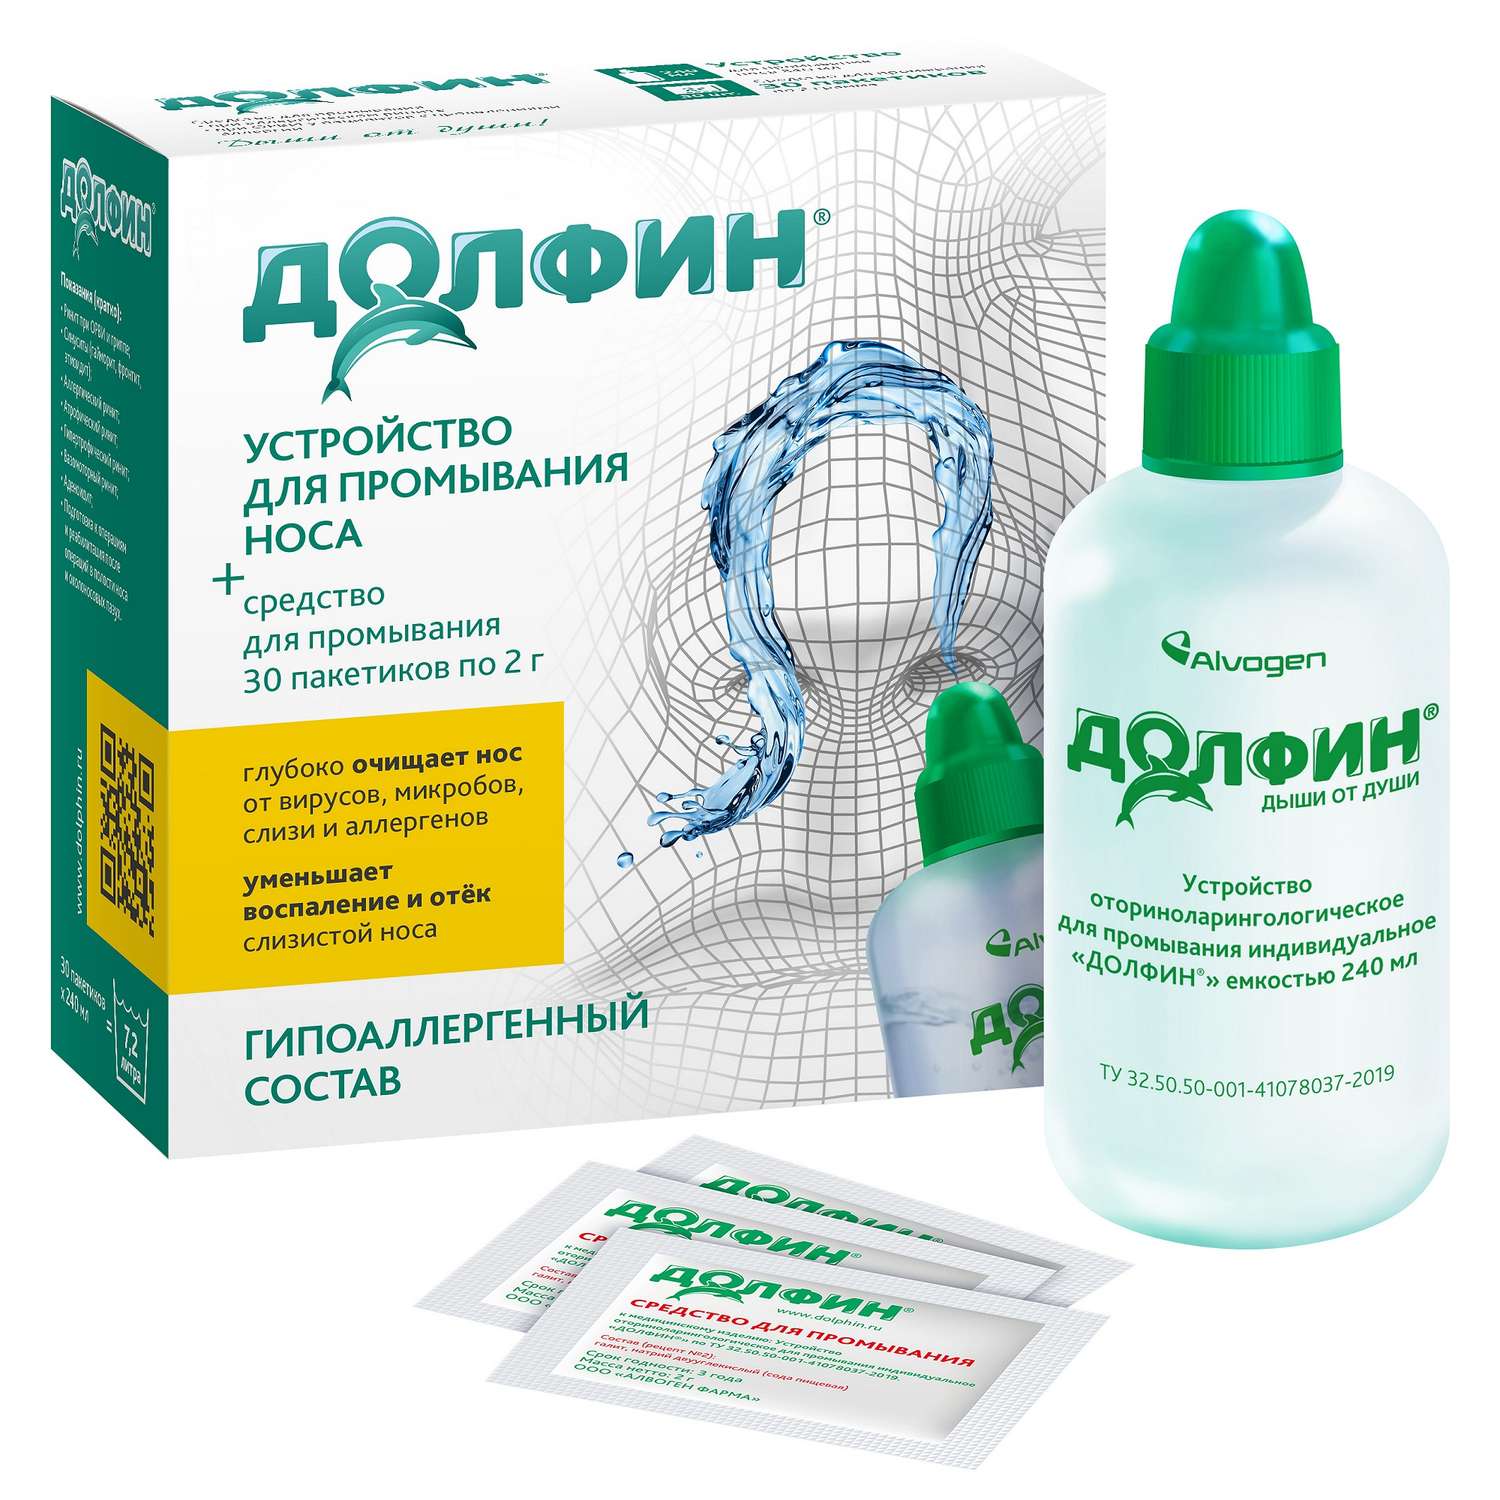 Устройство для промывания носа Долфин + средство для взрослых рецепт № 2 2г №30 гипоаллергенный состав - фото 1